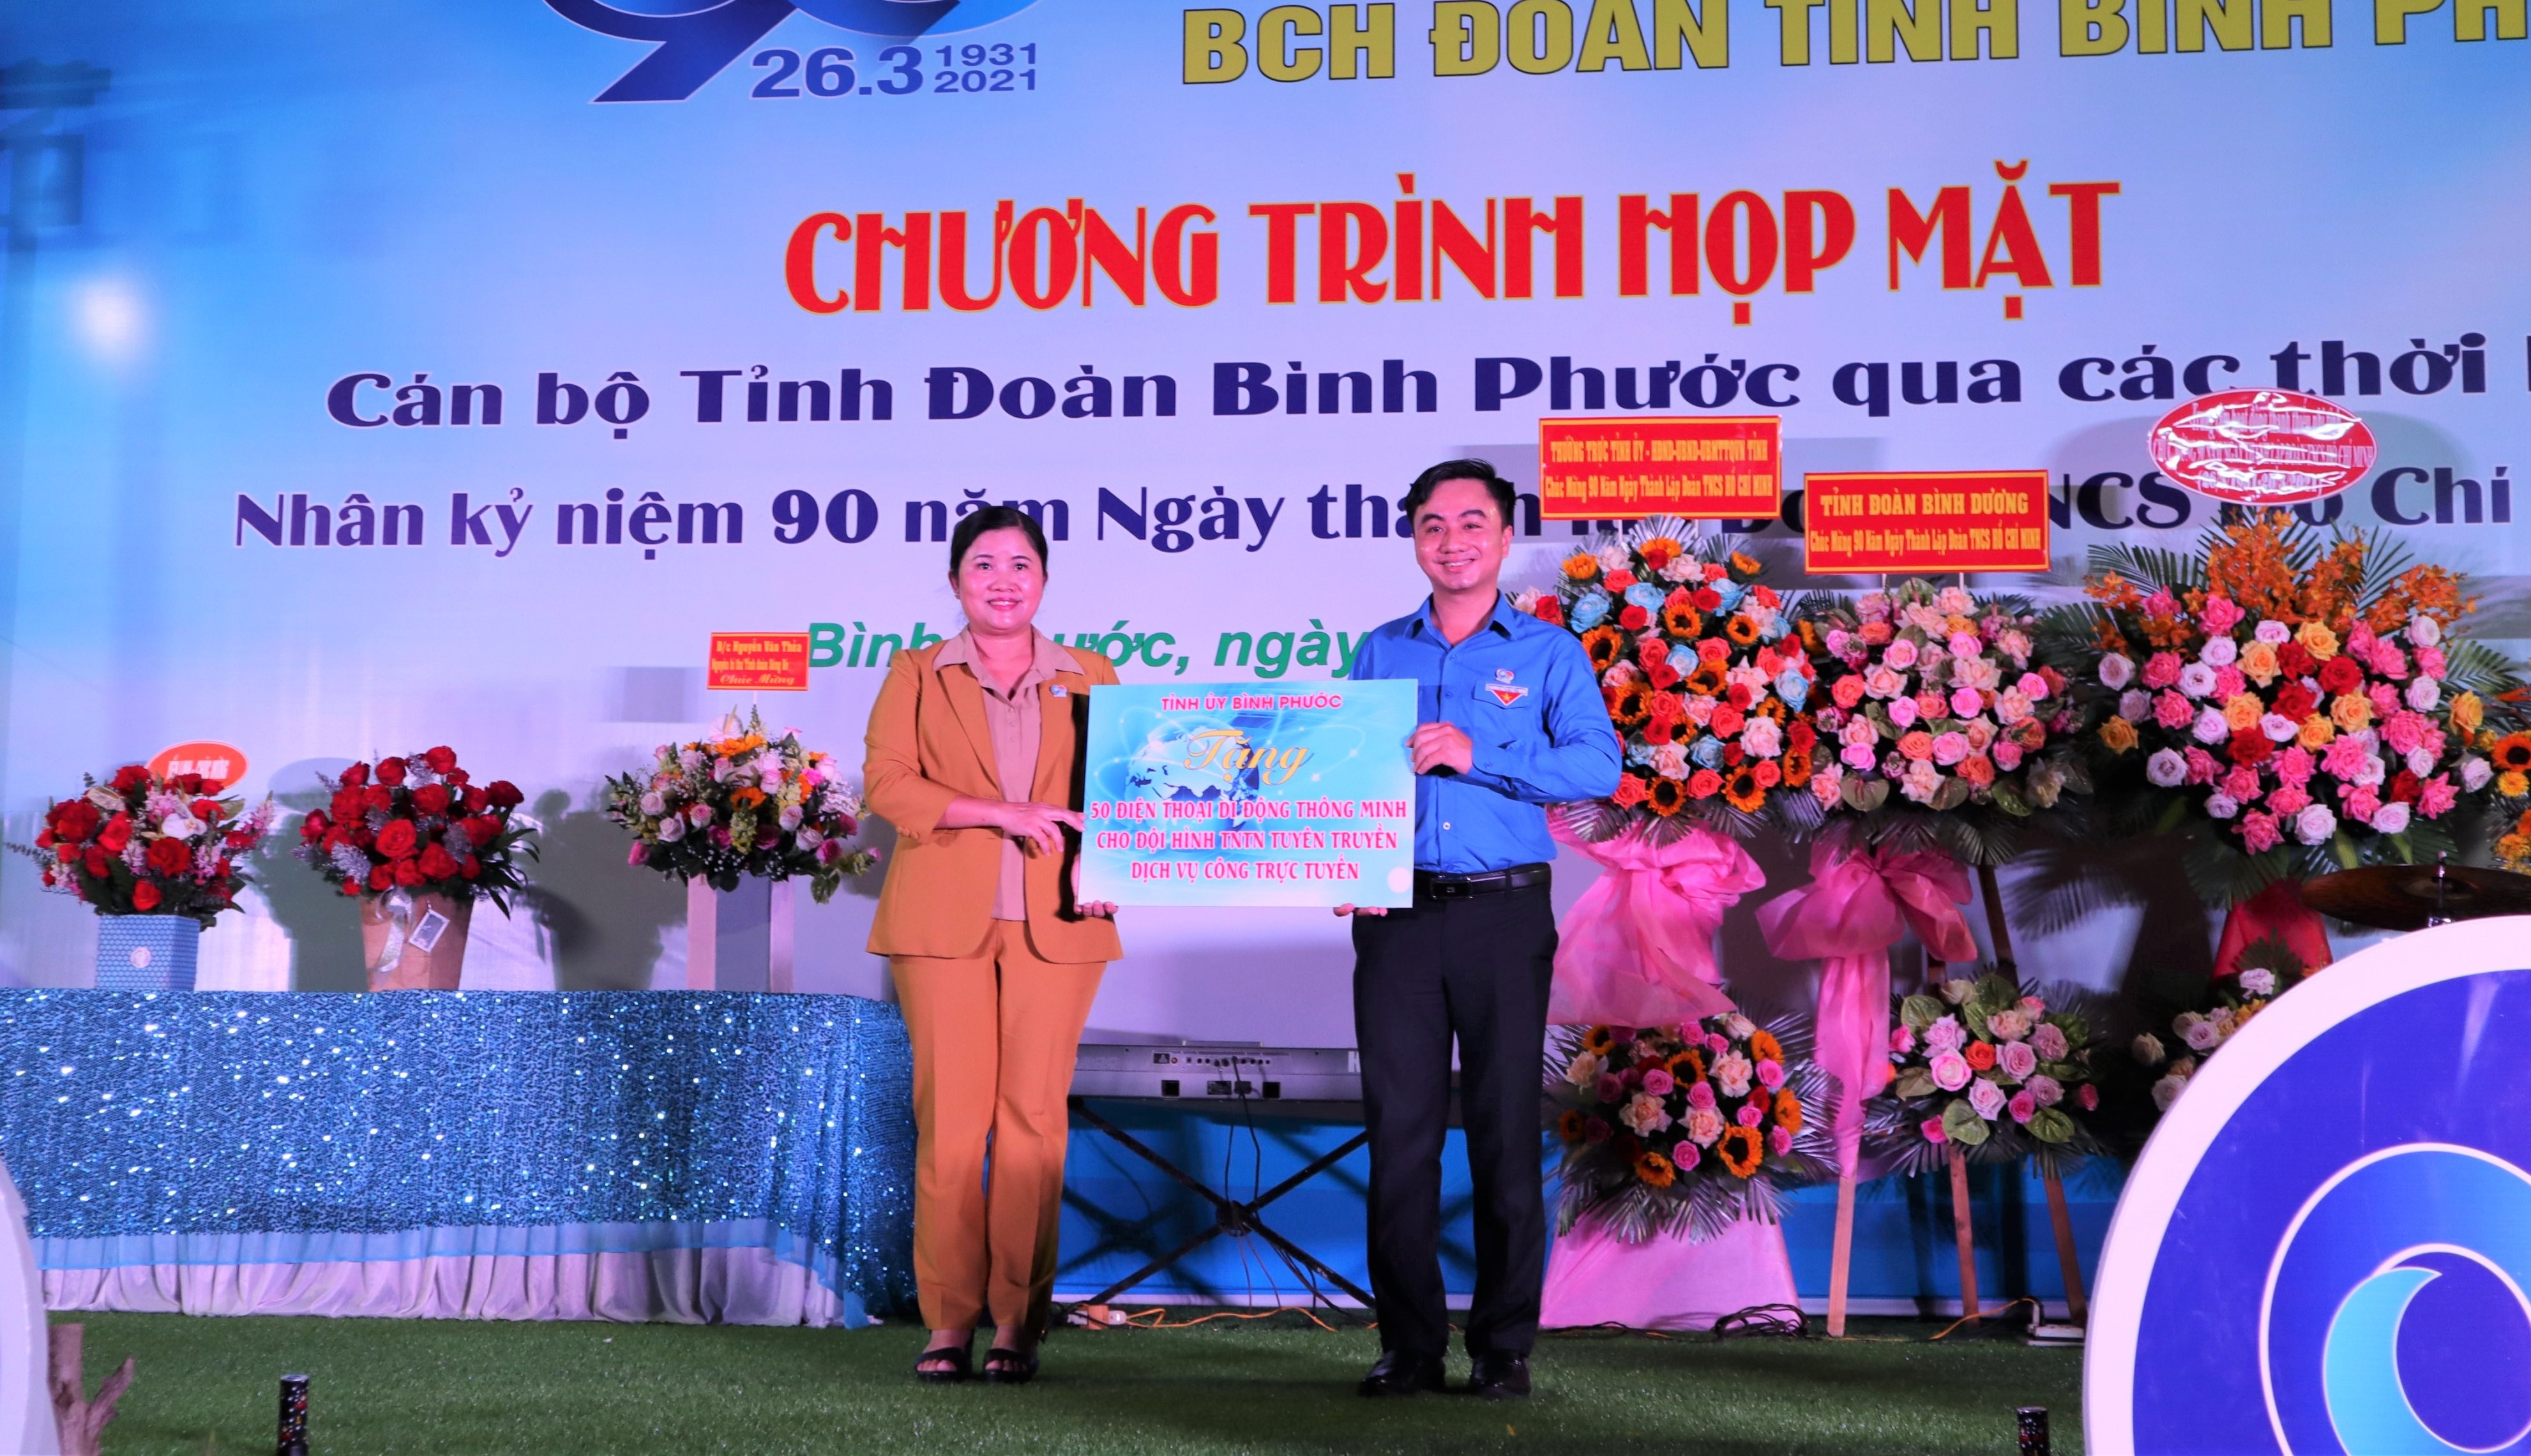 Phó Bí thư Tỉnh ủy - Chủ tịch UBND tỉnh Bình Phước Trần Tuệ Hiền thay mặt Thường trực Tỉnh ủy trao bảng tượng trưng 50 điện thoại di động thông minh cho Tỉnh Đoàn